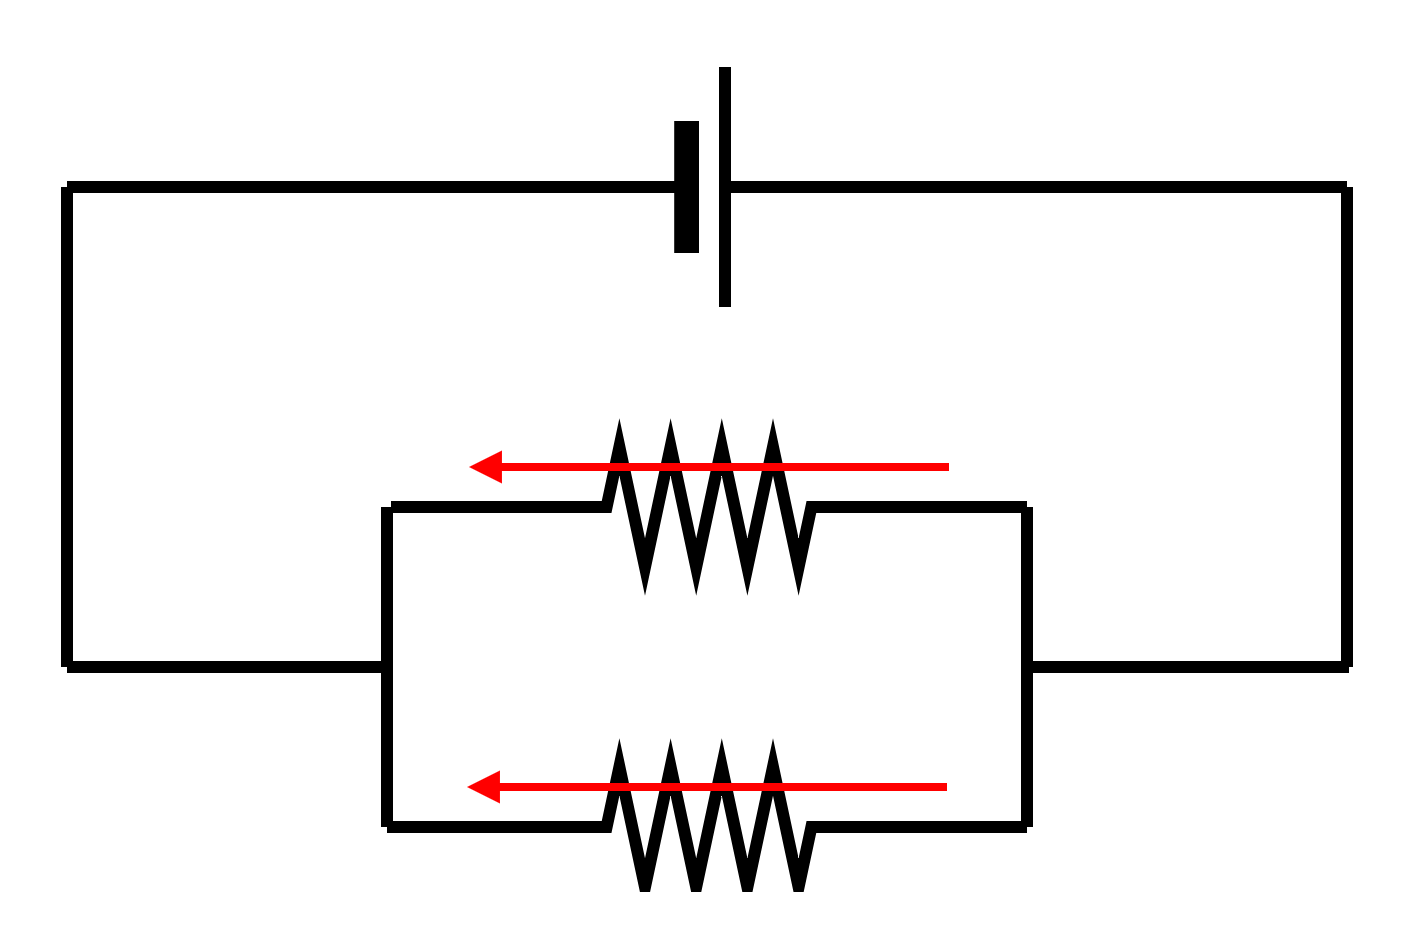 図1-2-3-1.並列接続